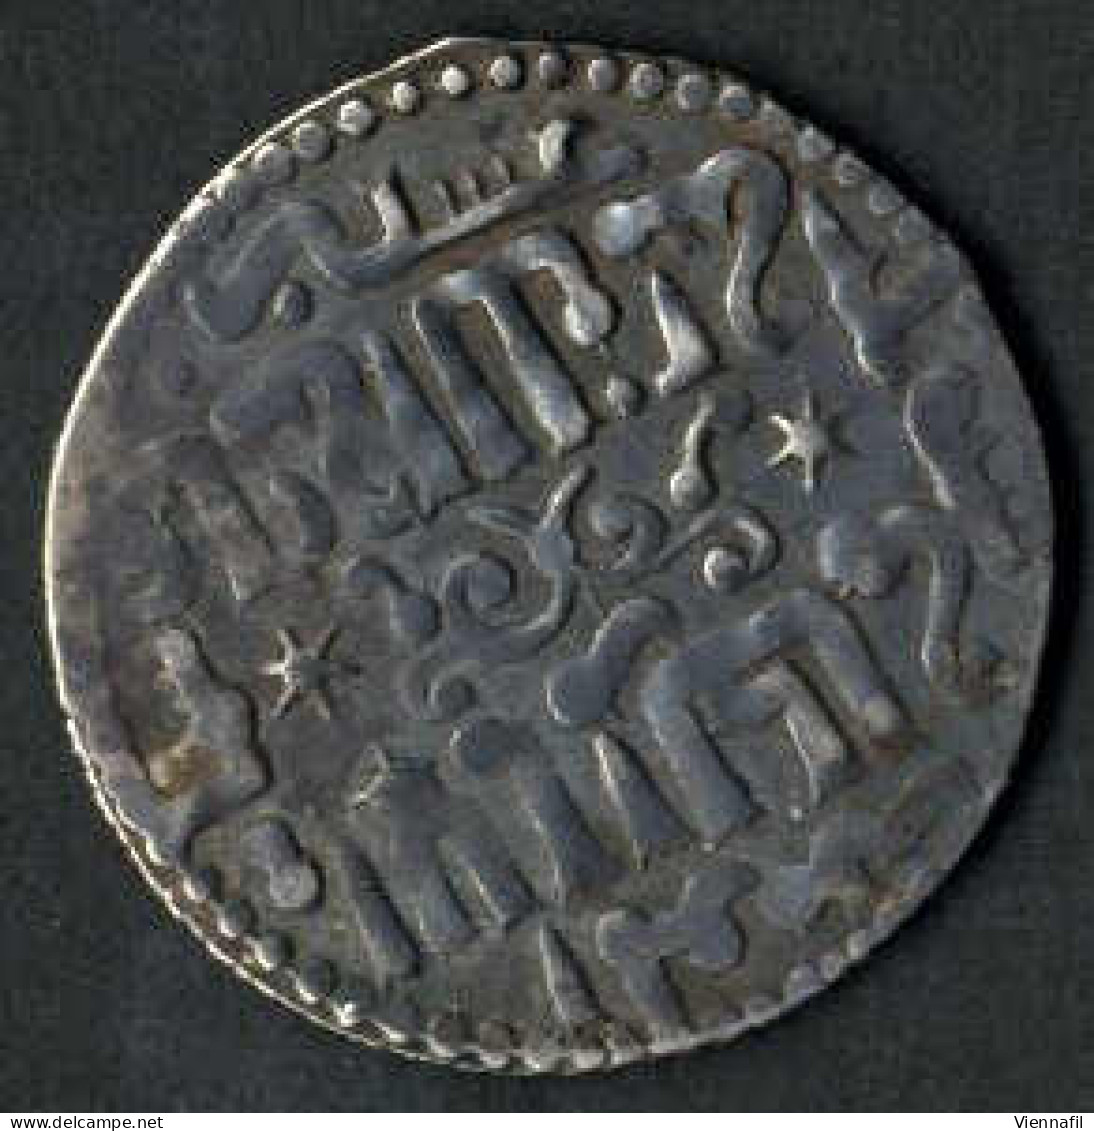 Kayqubad I., 616-634AH 1219-1236, Dirham Silber, 617,618,623 Qonya, 624 Ohne Münzstätte, BMC 123,125,129, -, Sehr Schön, - Islamische Münzen